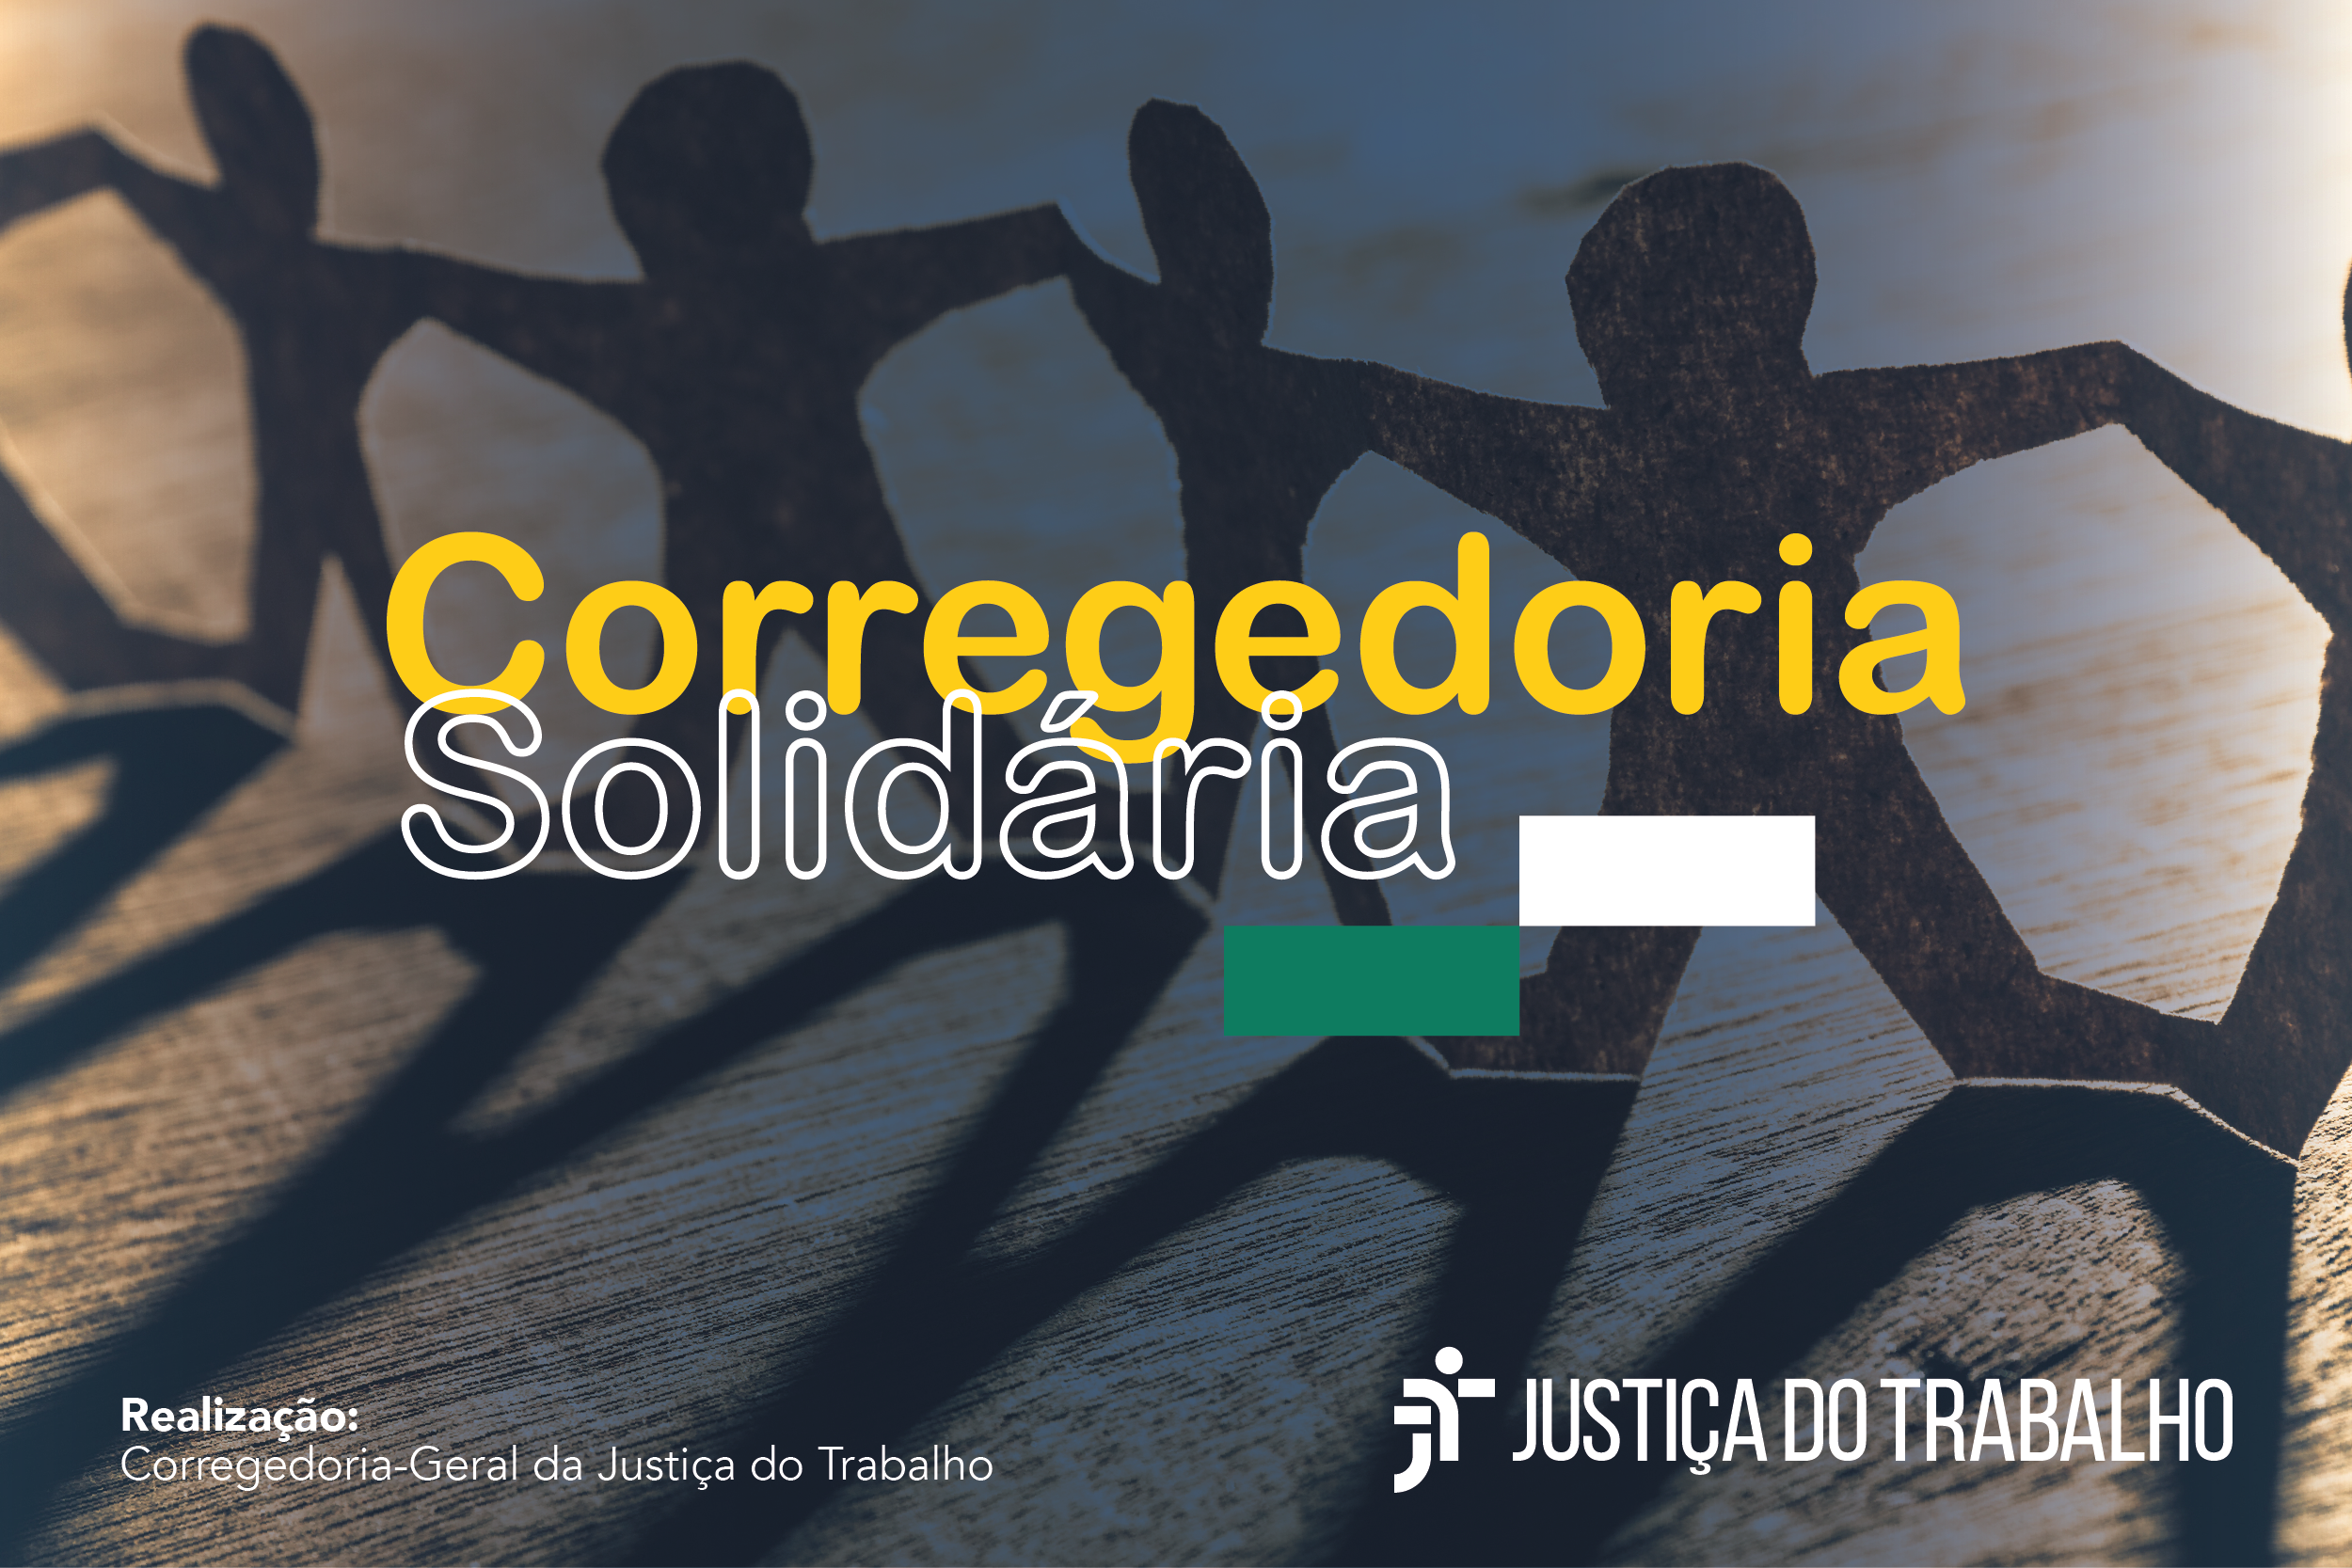 Arte de divulgação da Corregedoria Solidária.